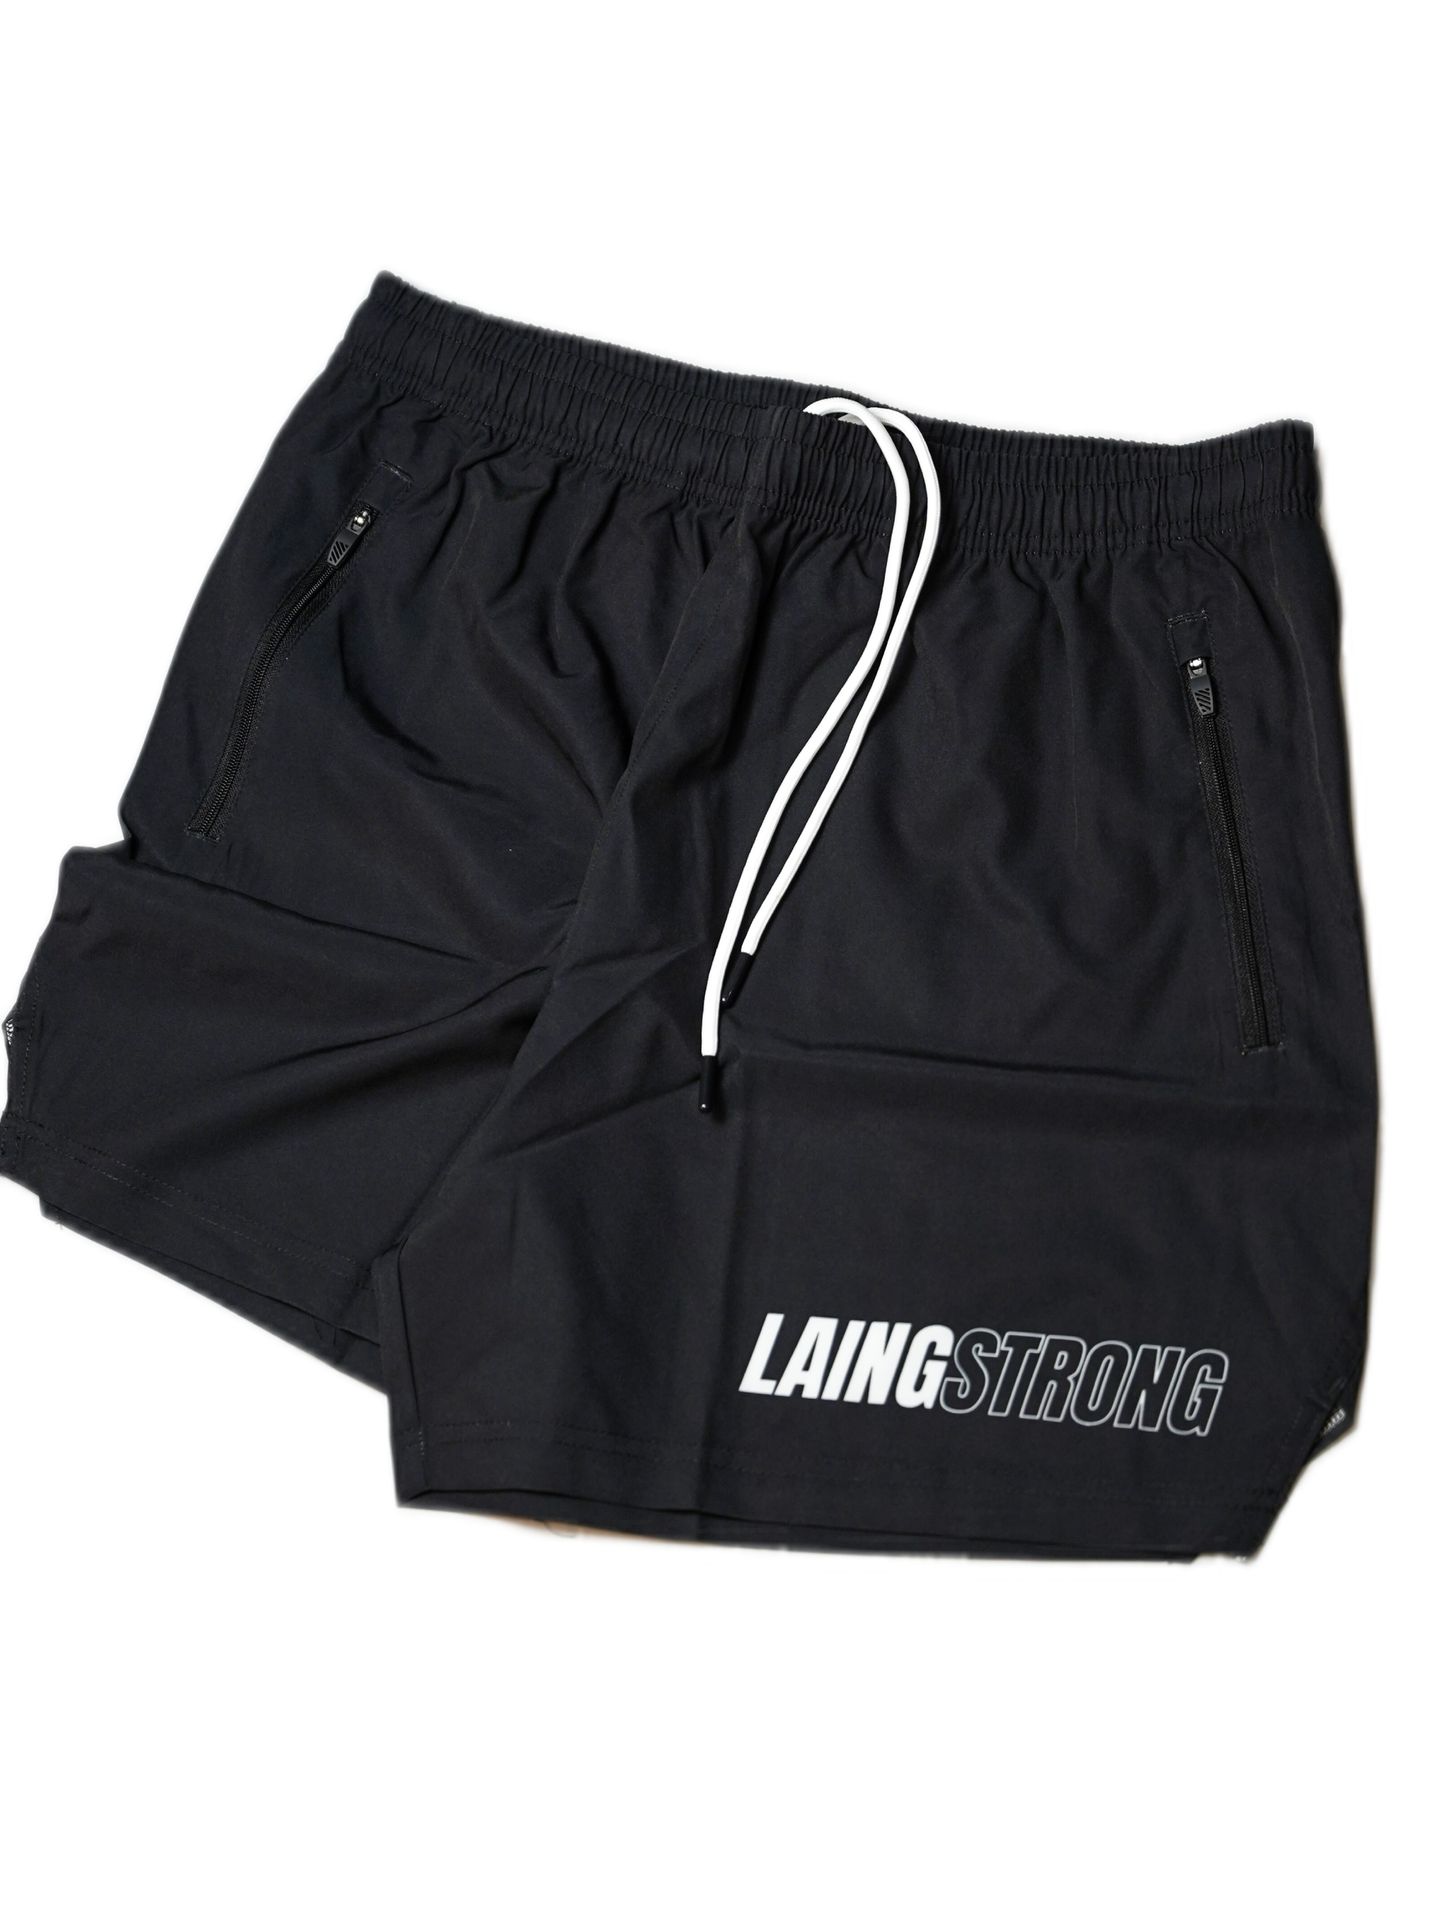 LaingStrong Training Shorts